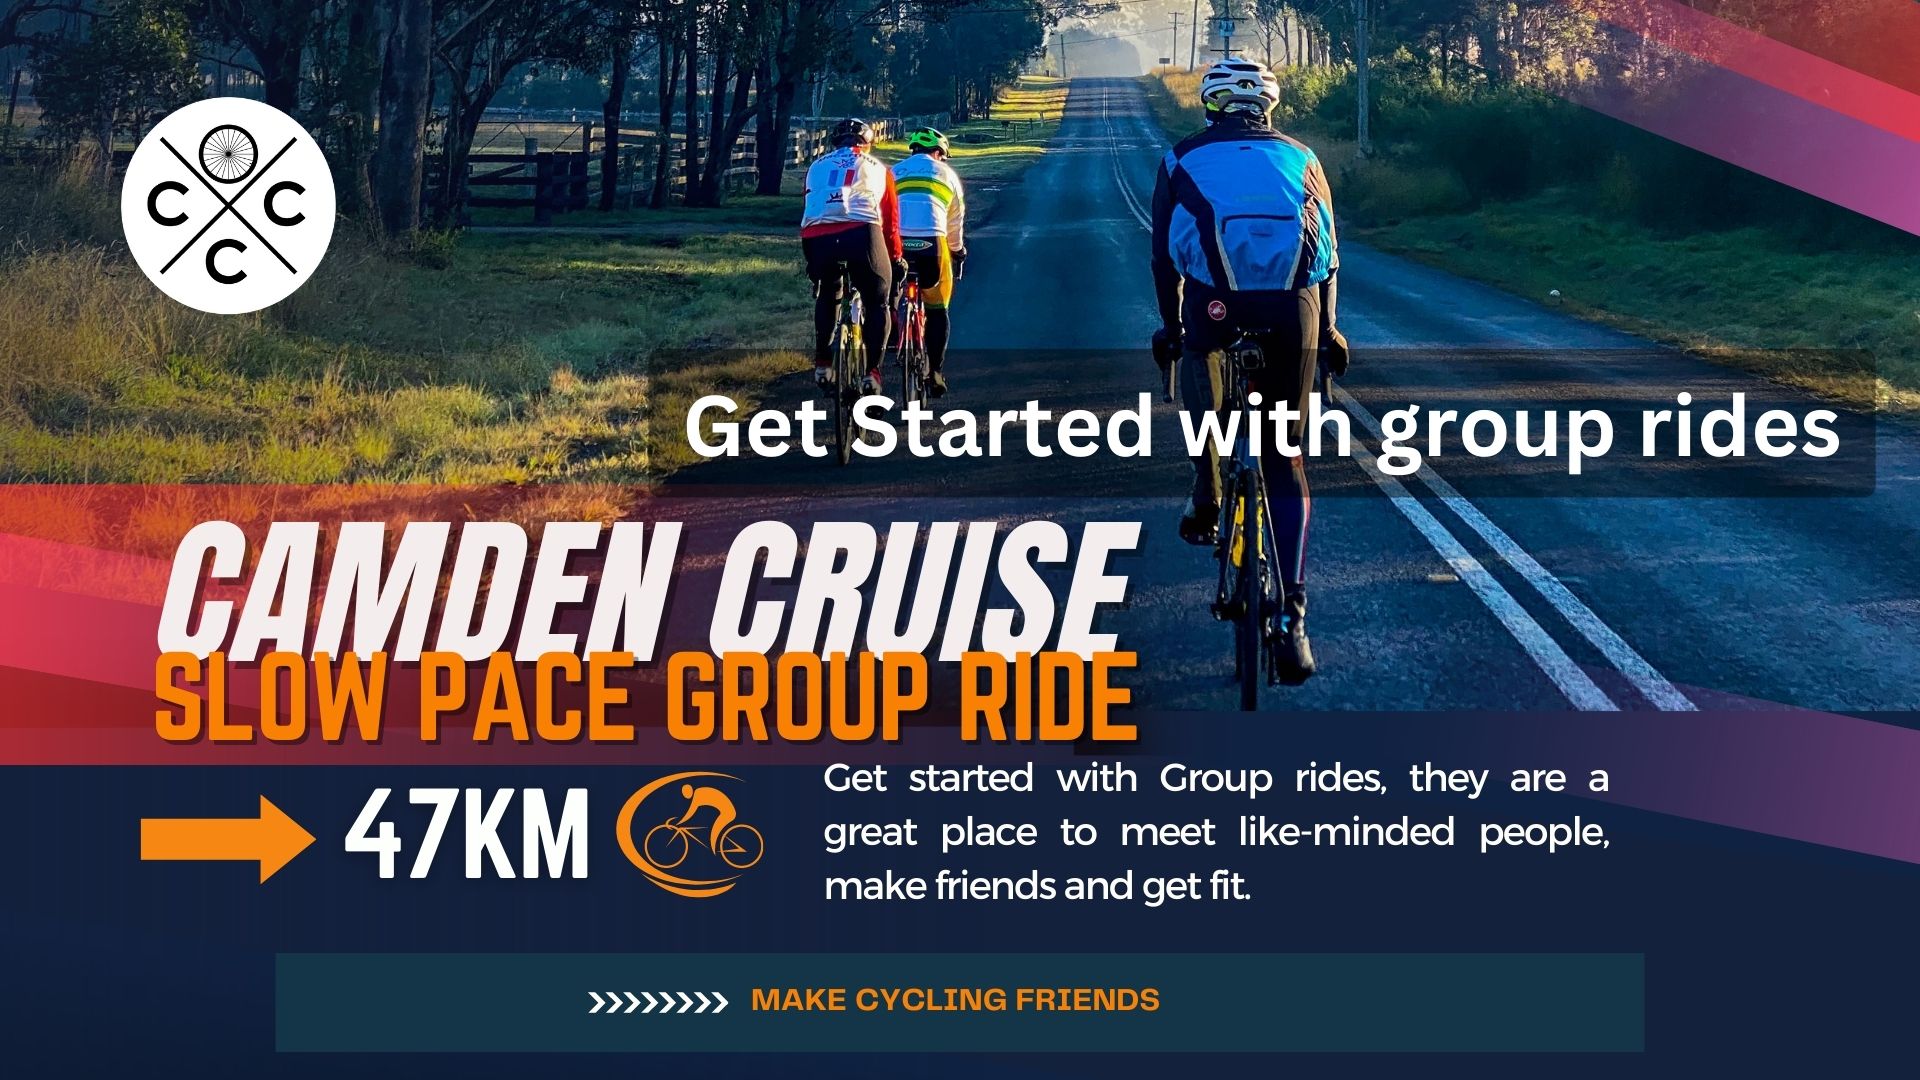 Camden Cruise Group Ride cycling